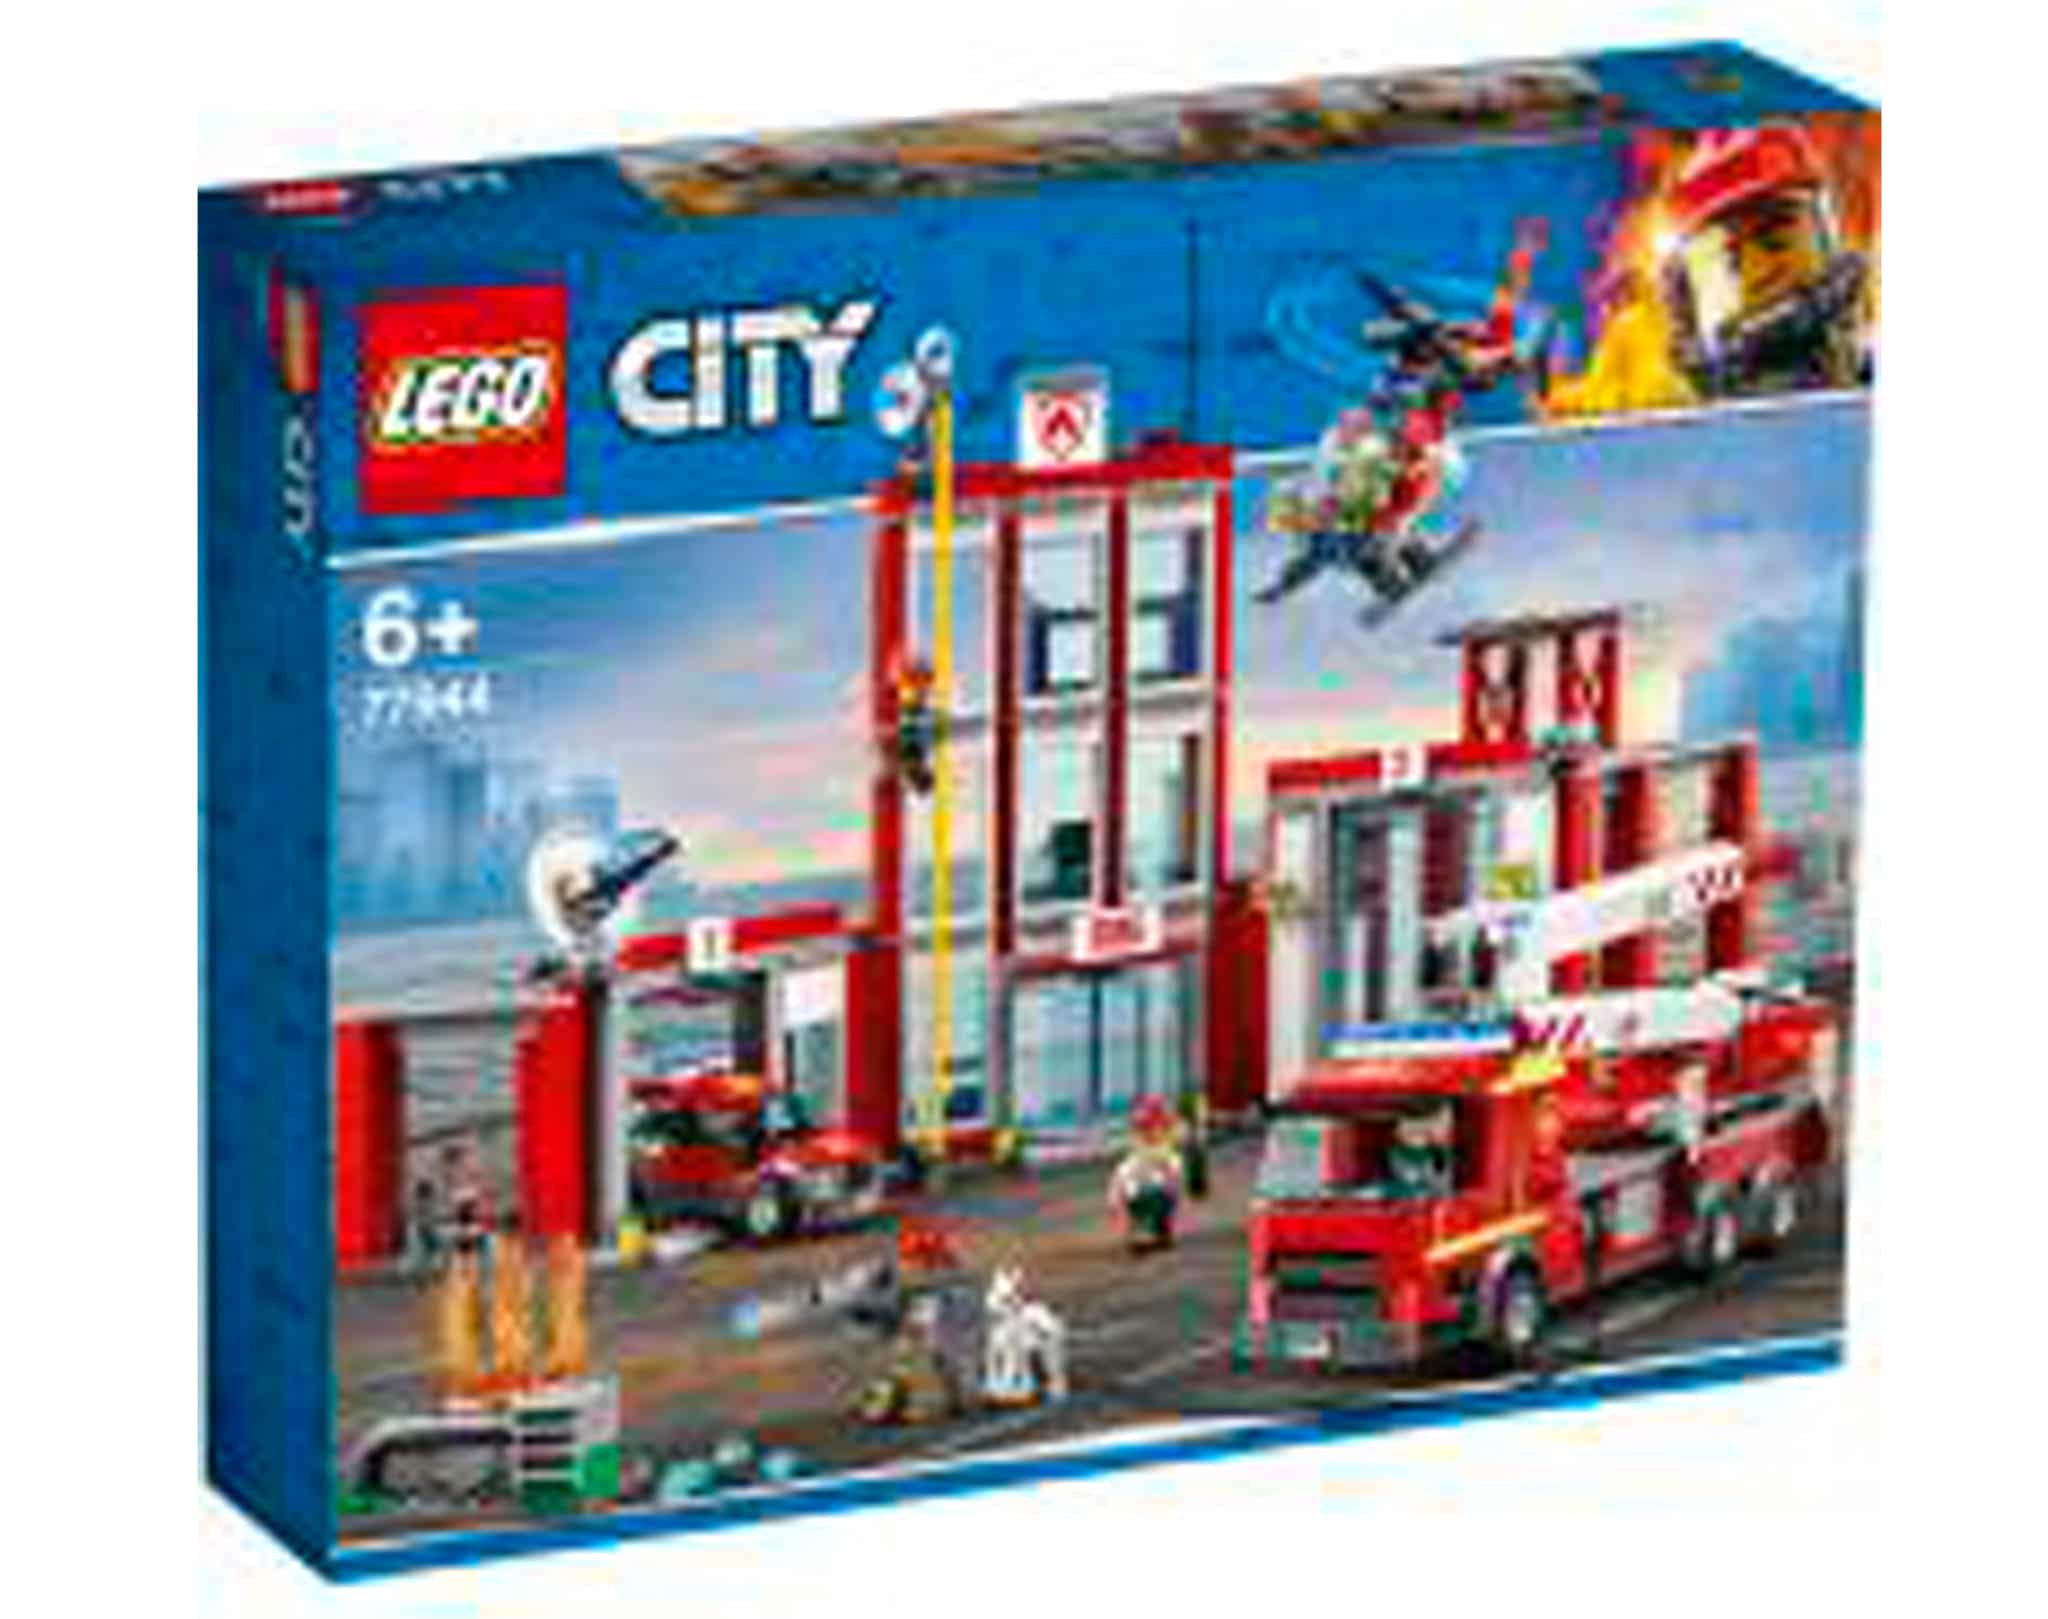 LEGO City 77944 Feuerwehr Station